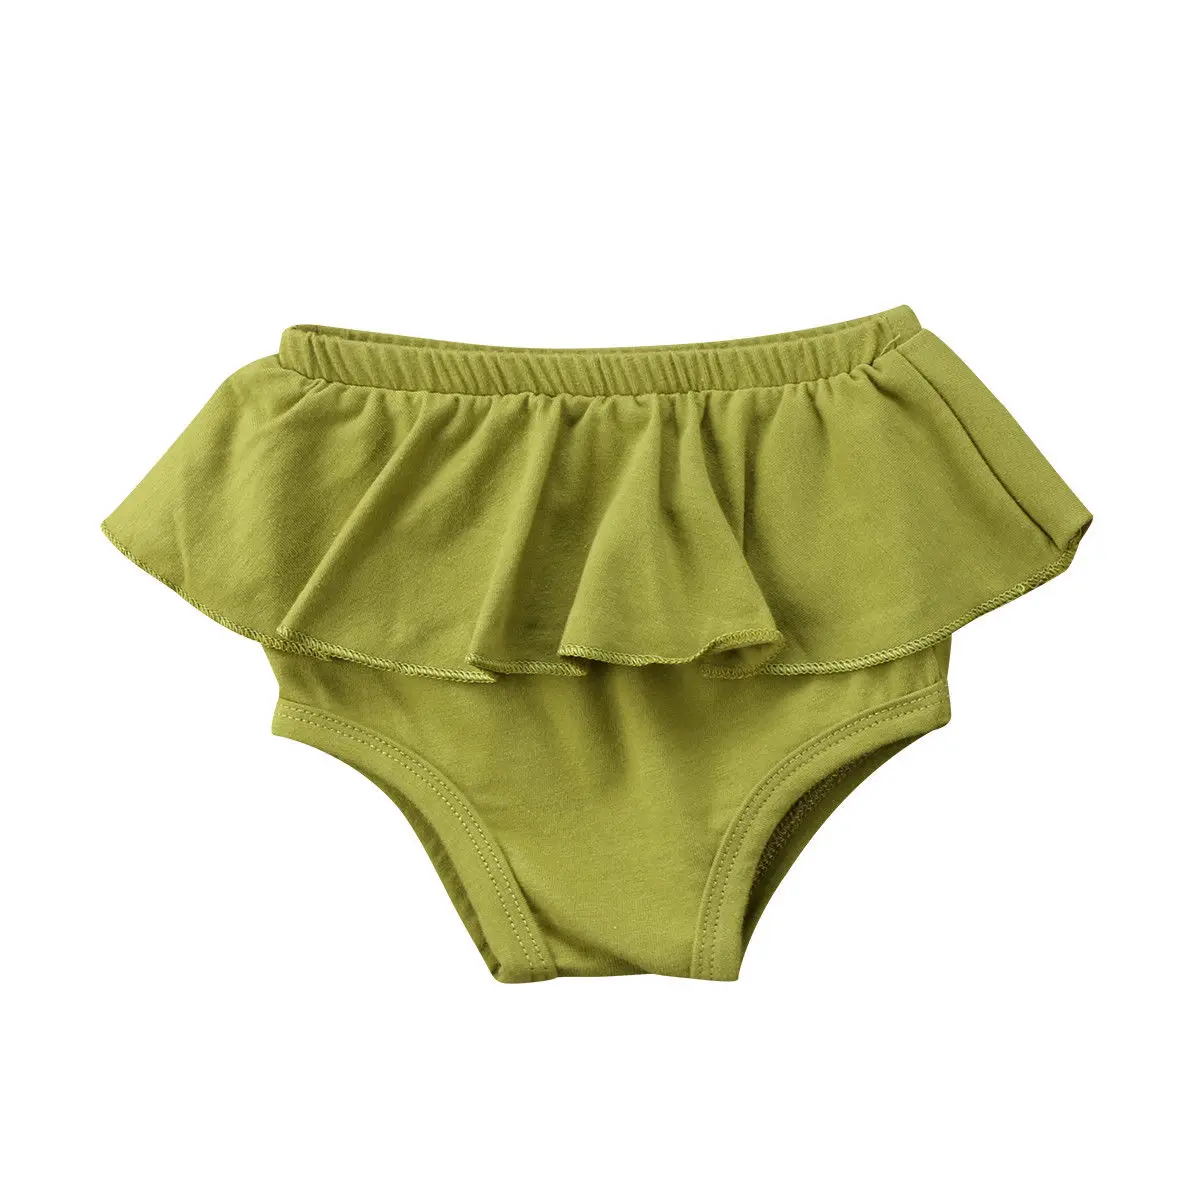 Для новорожденных, одежда для детей и малышей плотное платье для девочек, Короткие штаны-шаровары брюки PP штаны-шаровары Летние Симпатичные Пользовательские трусики на возраст от 0 до 24 месяцев - Цвет: Зеленый